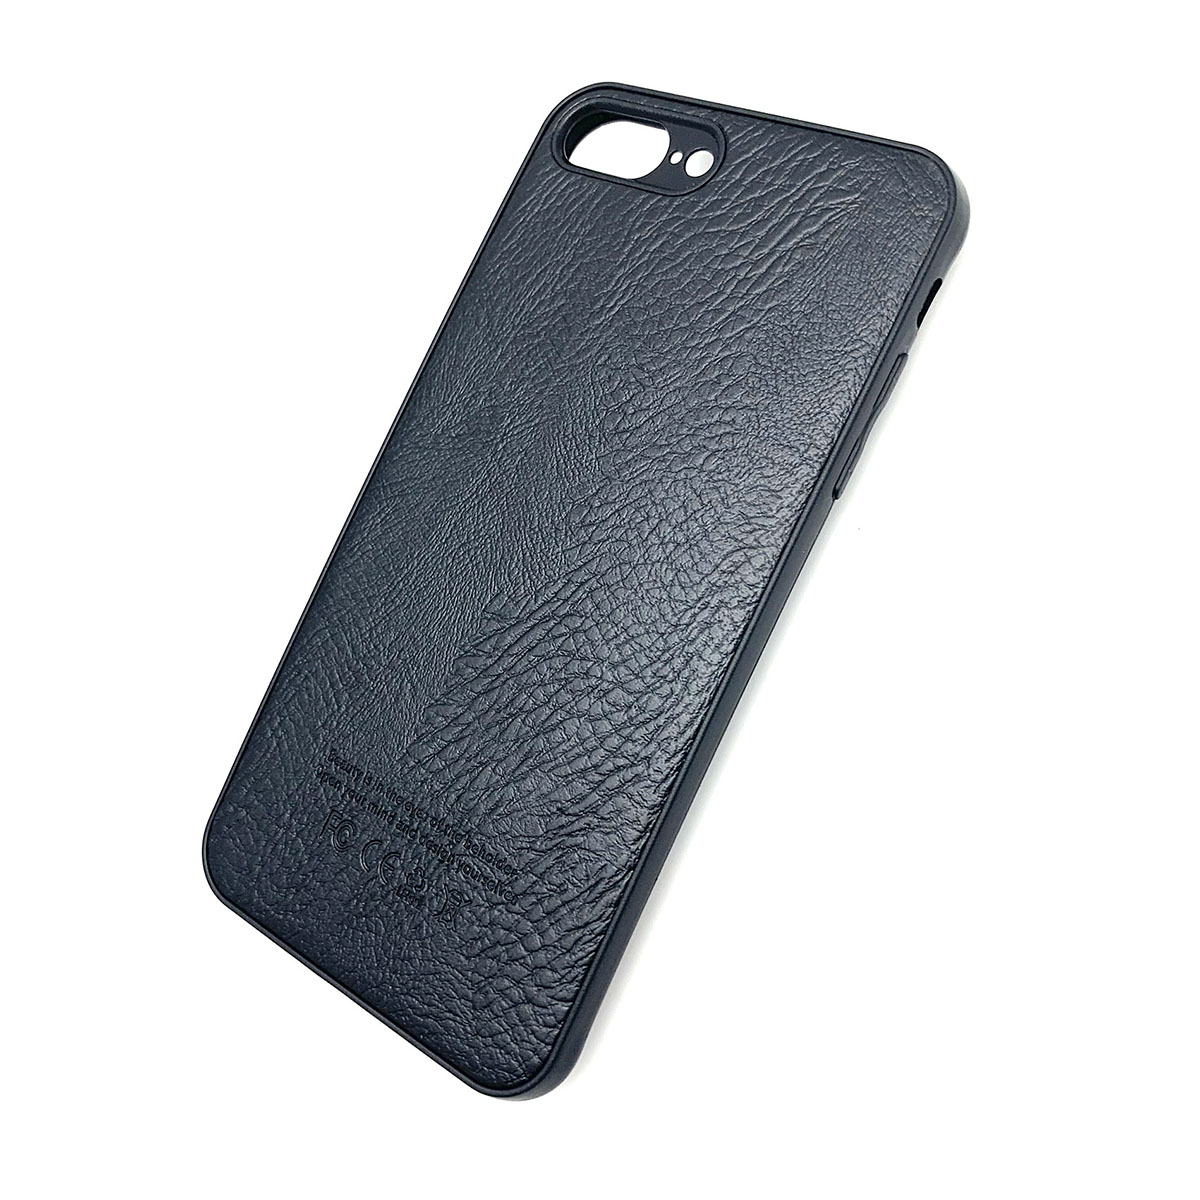 Чехол накладка для APPLE iPhone 7, 8 Plus, силикон, имитация под кожу, логотип, цвет черный.